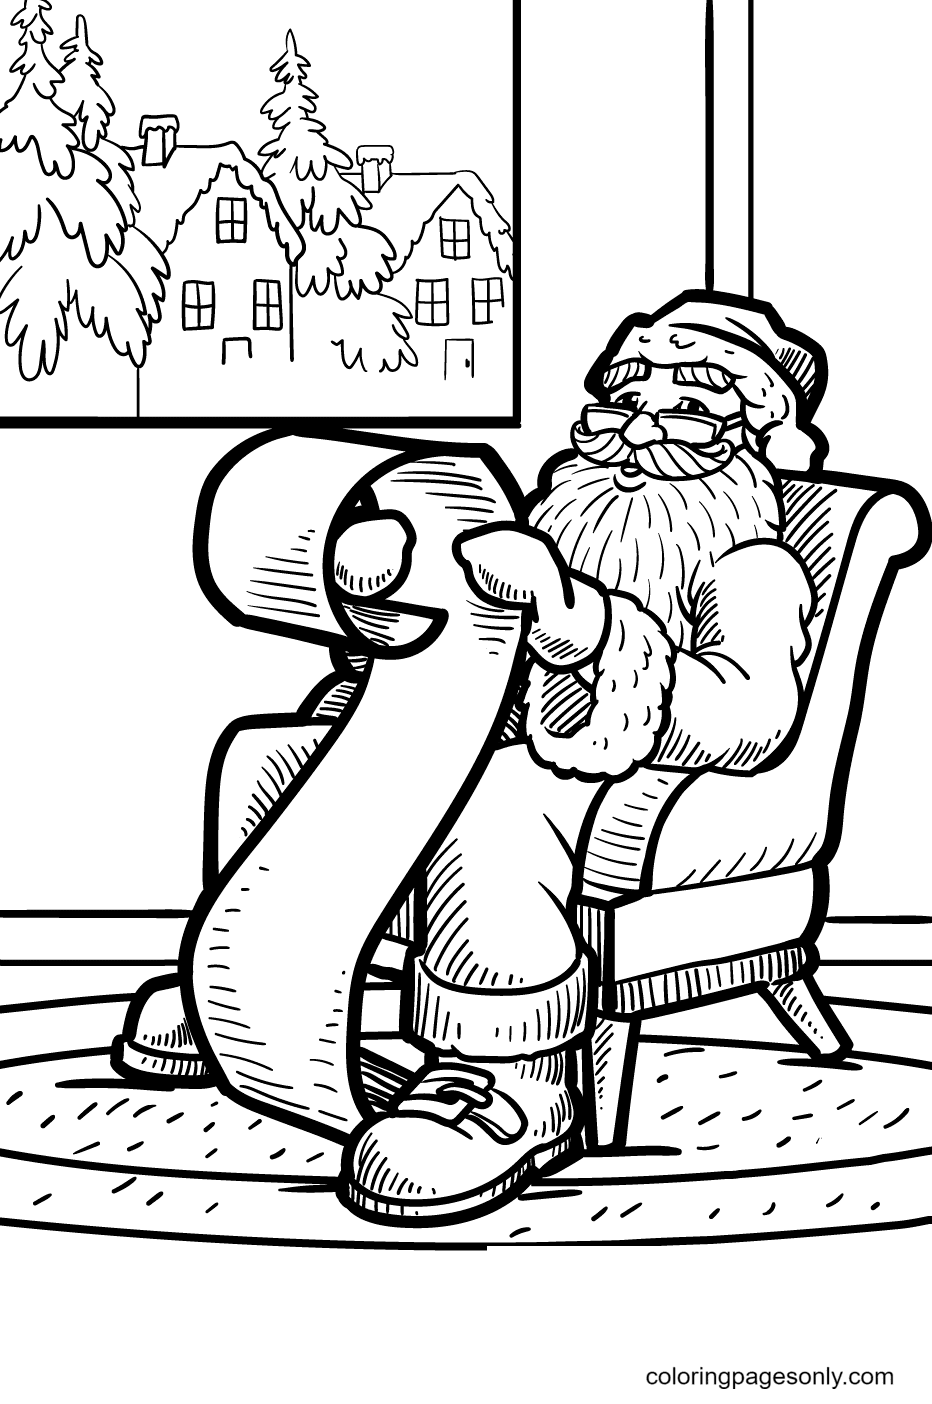 Der Weihnachtsmann erstellt vom Weihnachtsmann eine Liste derjenigen, die ungezogen oder freundlich sind